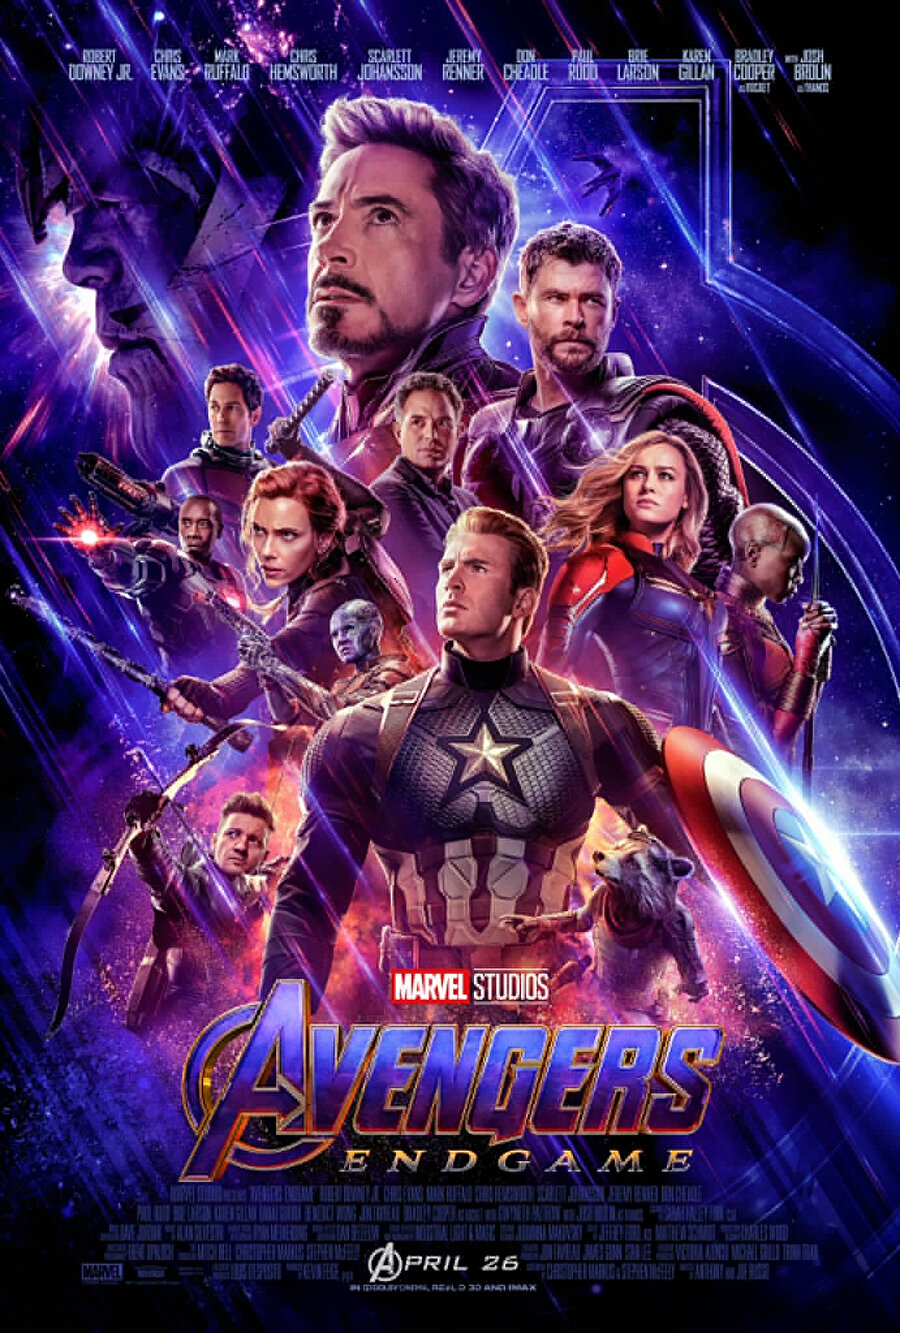 Marvel Avengers Endgame fragmanın ardından bir de tüm süper kahramanların yer aldığı poster yayınladı.